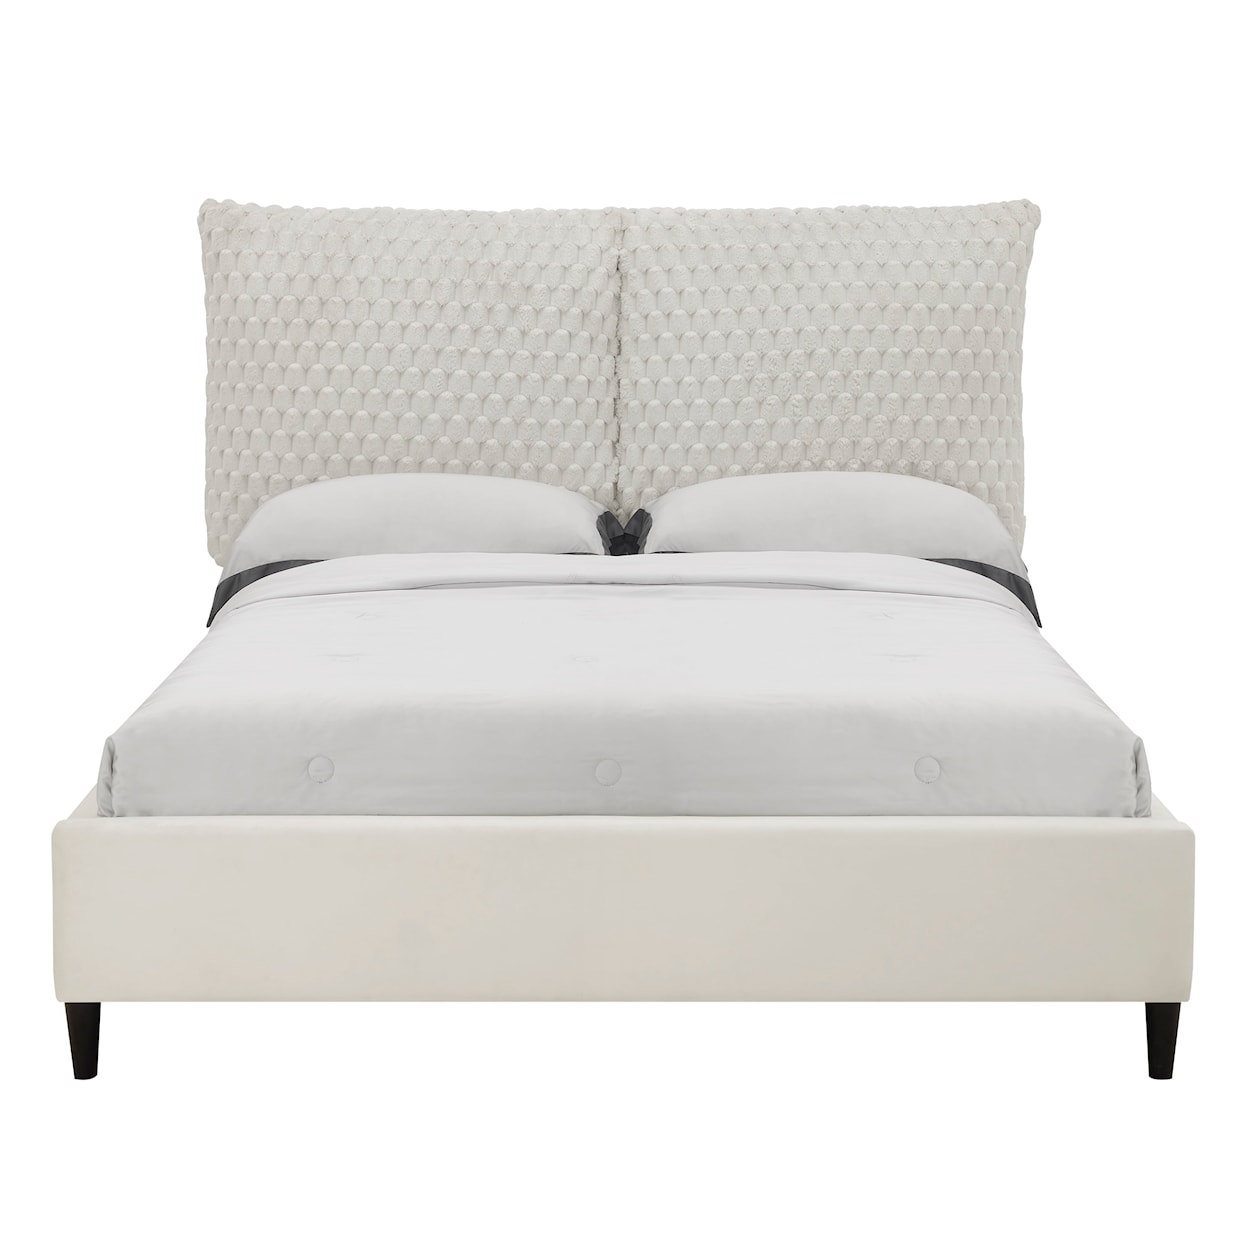 CM VIOLET Upholstered Bed - Queen